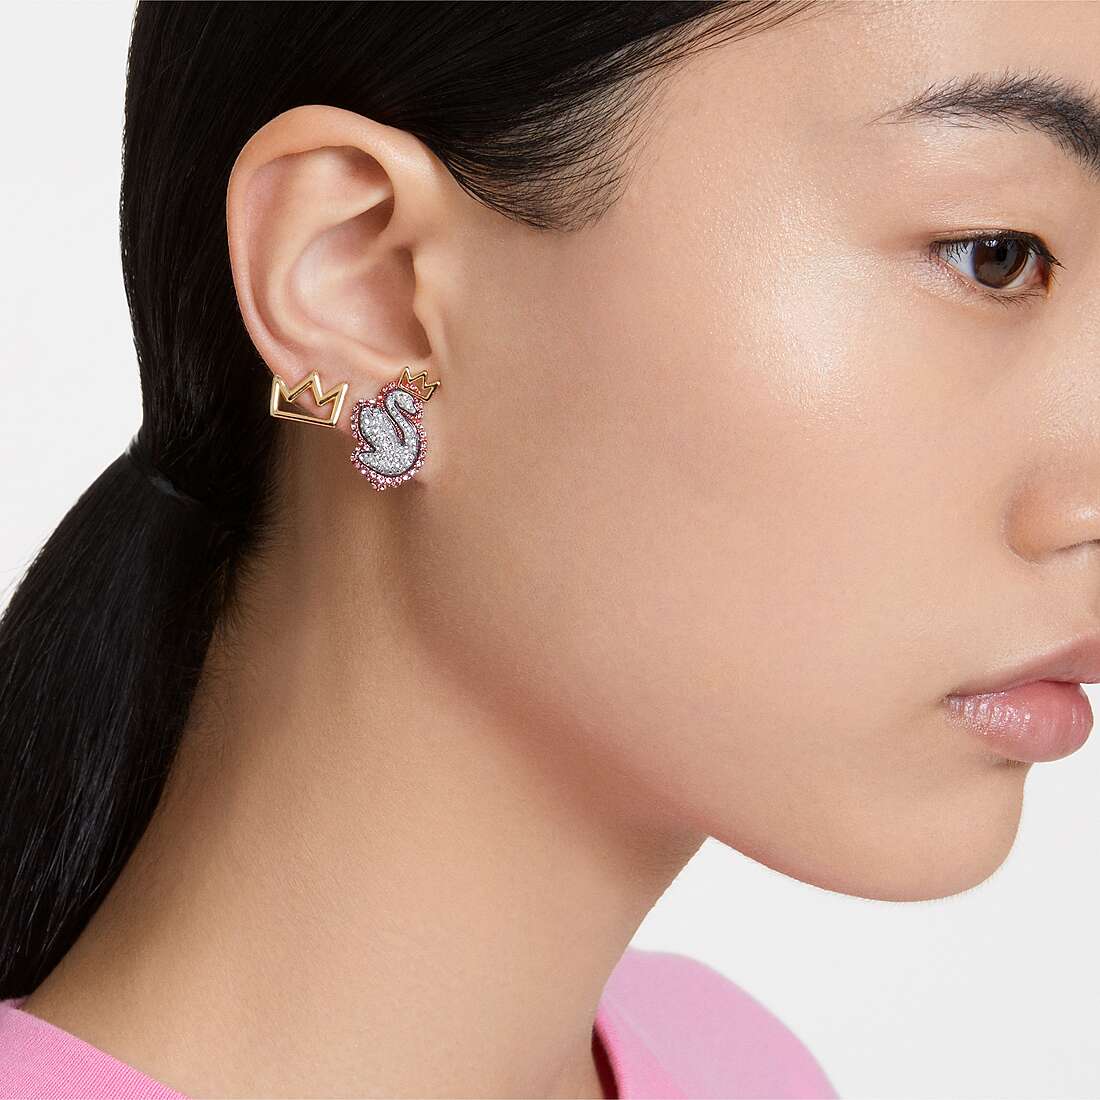 Swarovski earrings woman 5649197 wearing